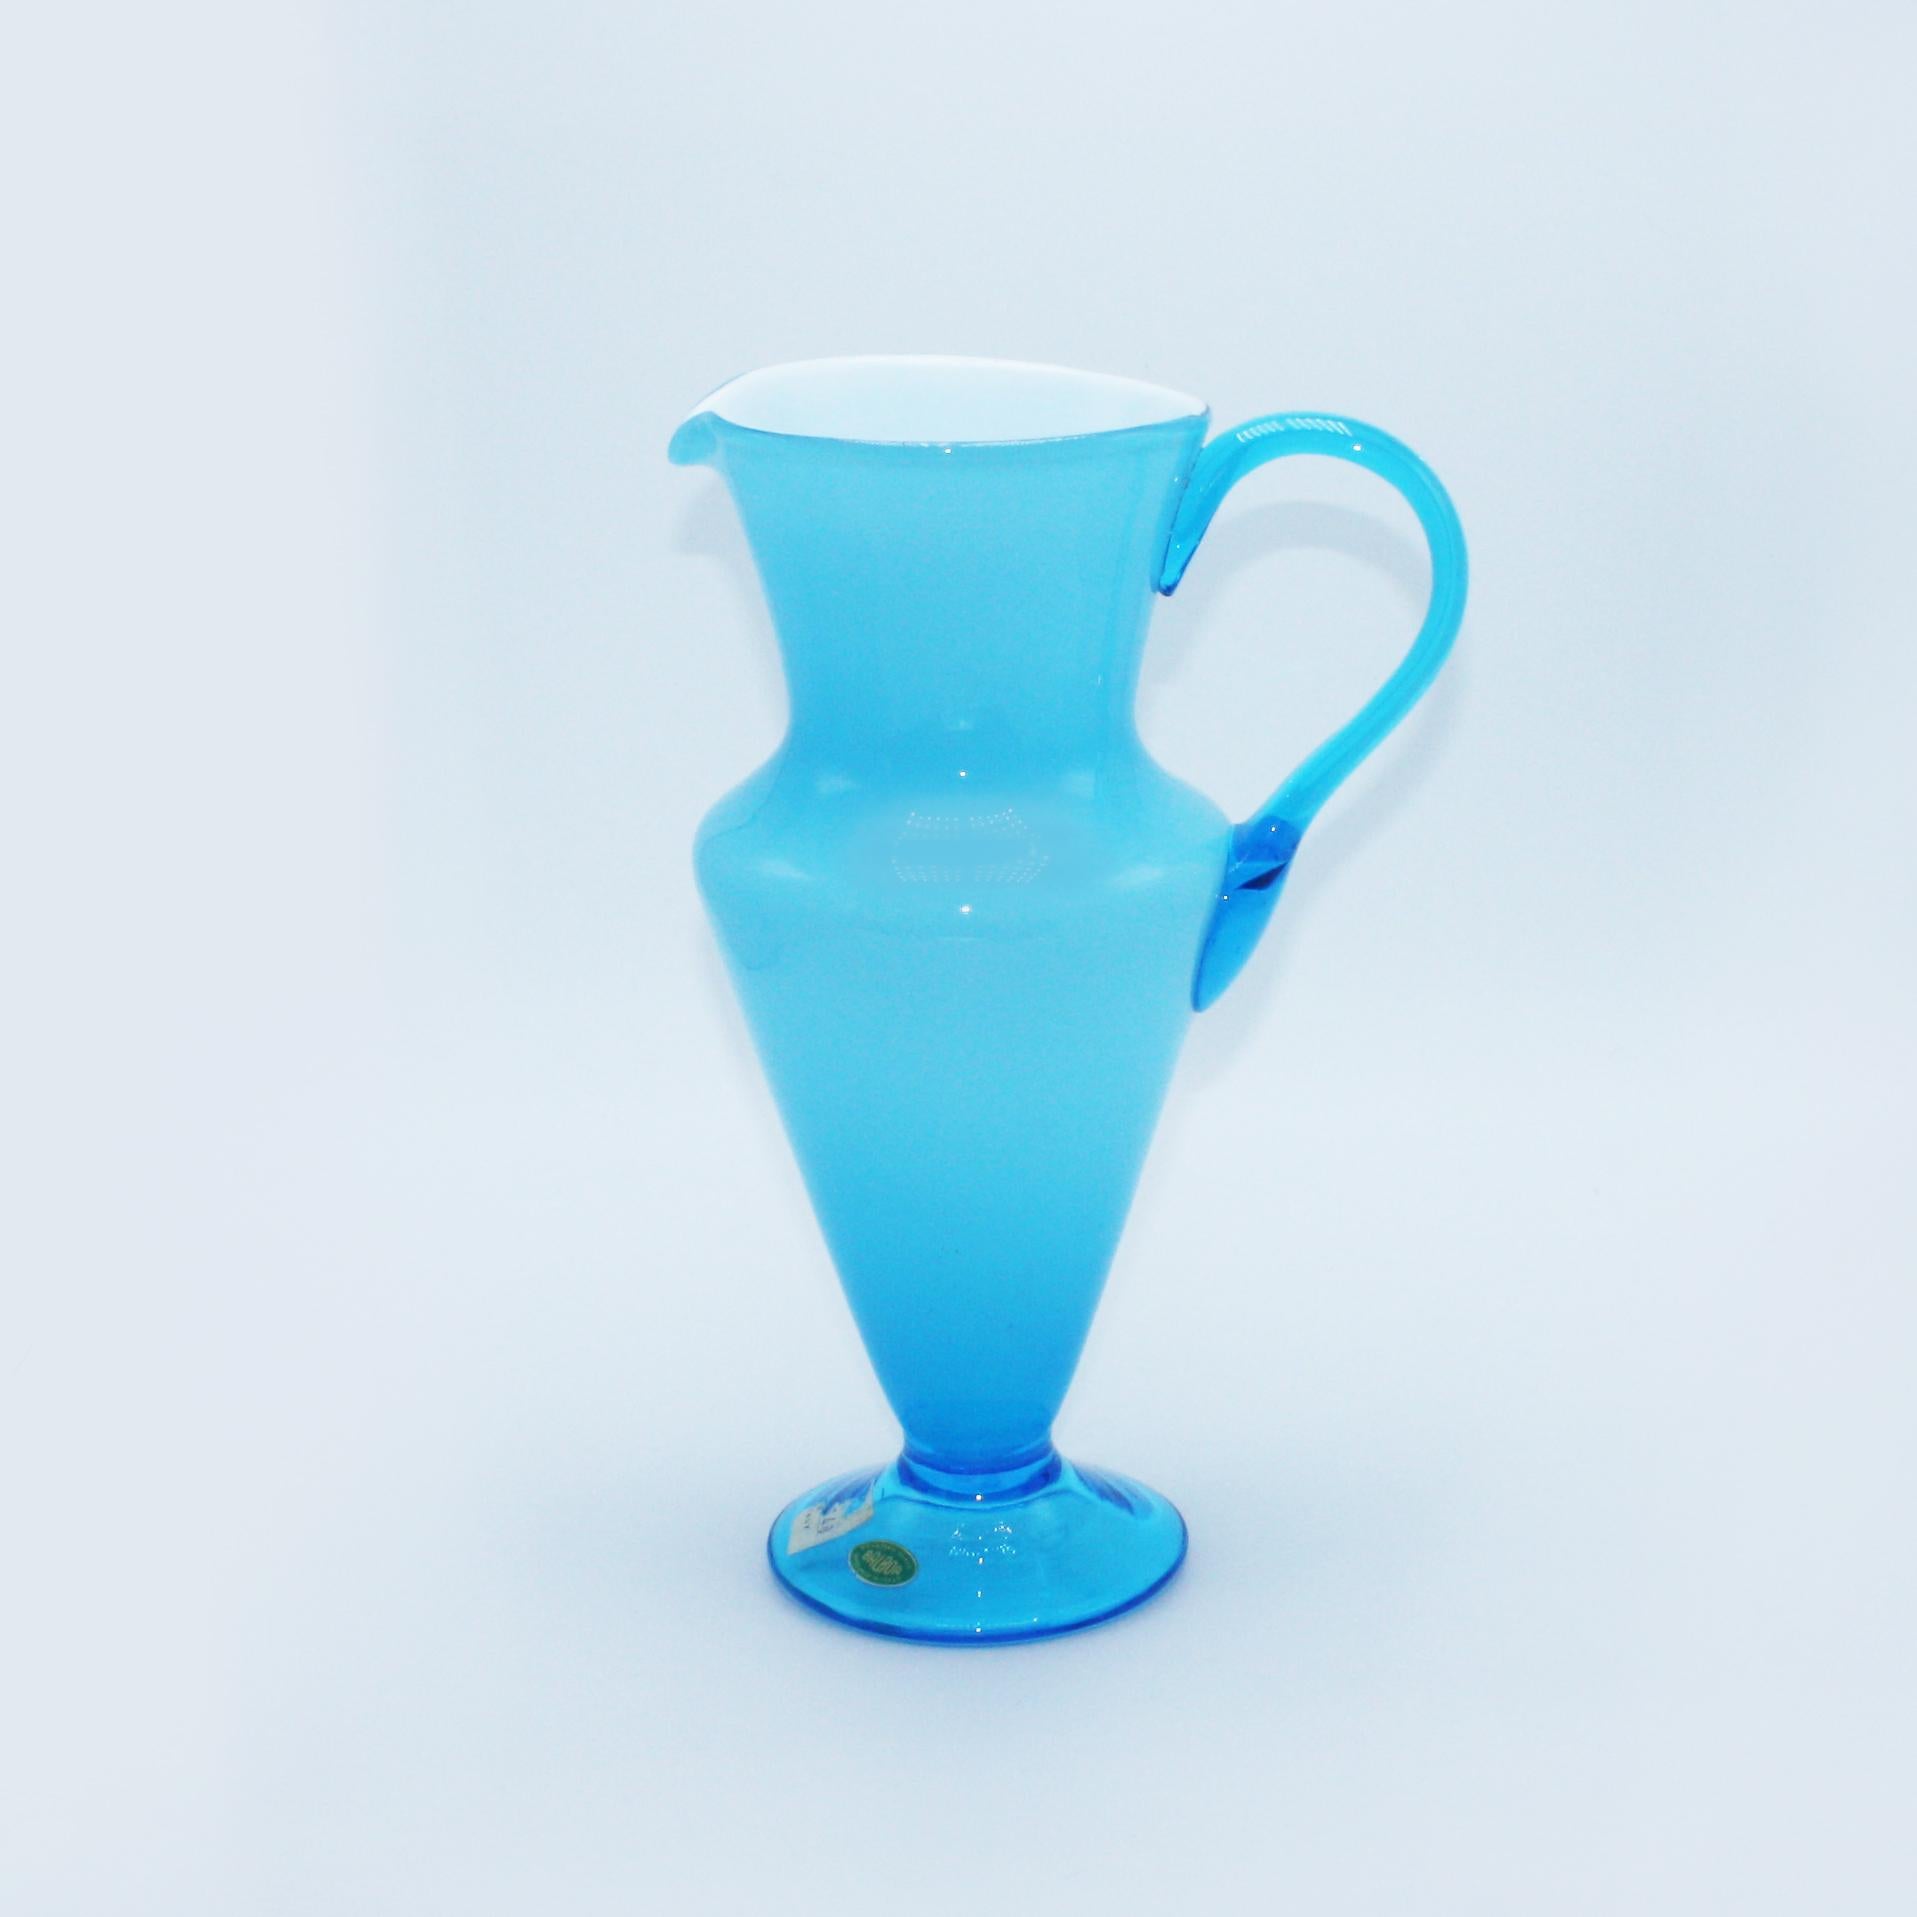 Aqua Balboa white cased Murano glass pitcher, circa 1960.